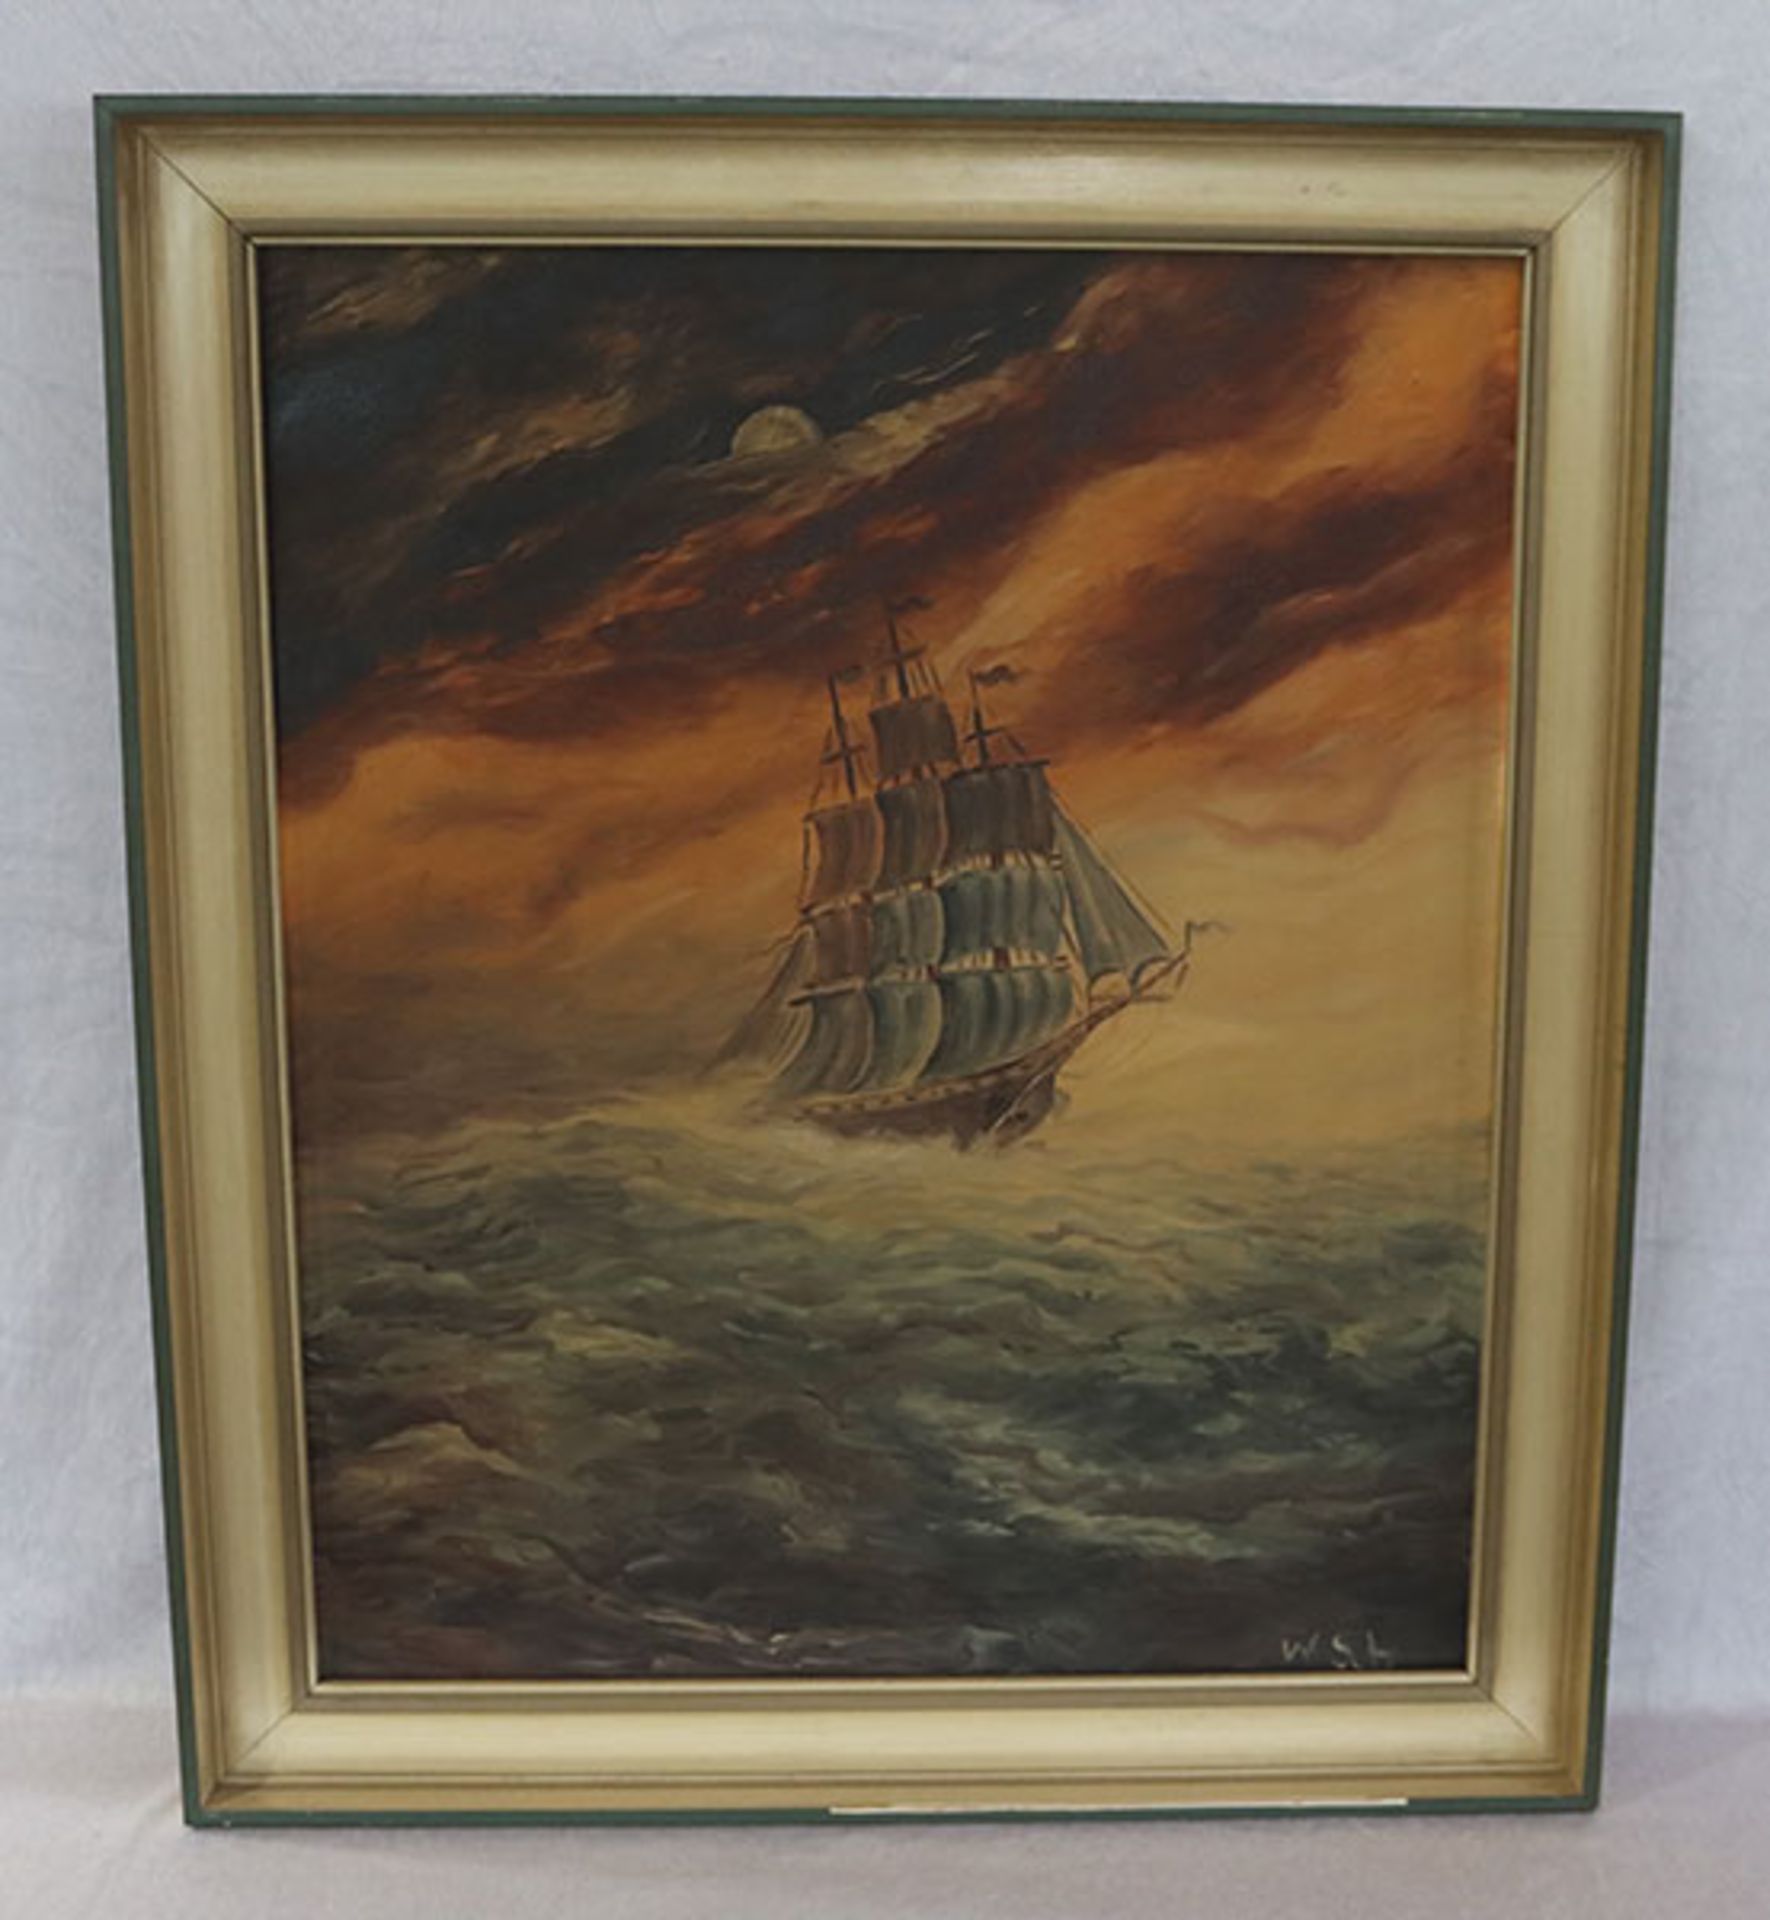 Gemälde ÖL/LW 'Segelboot', monogrammiert W Sch, gerahmt, Rahmen bestossen, incl. Rahmen 70 cm x 60